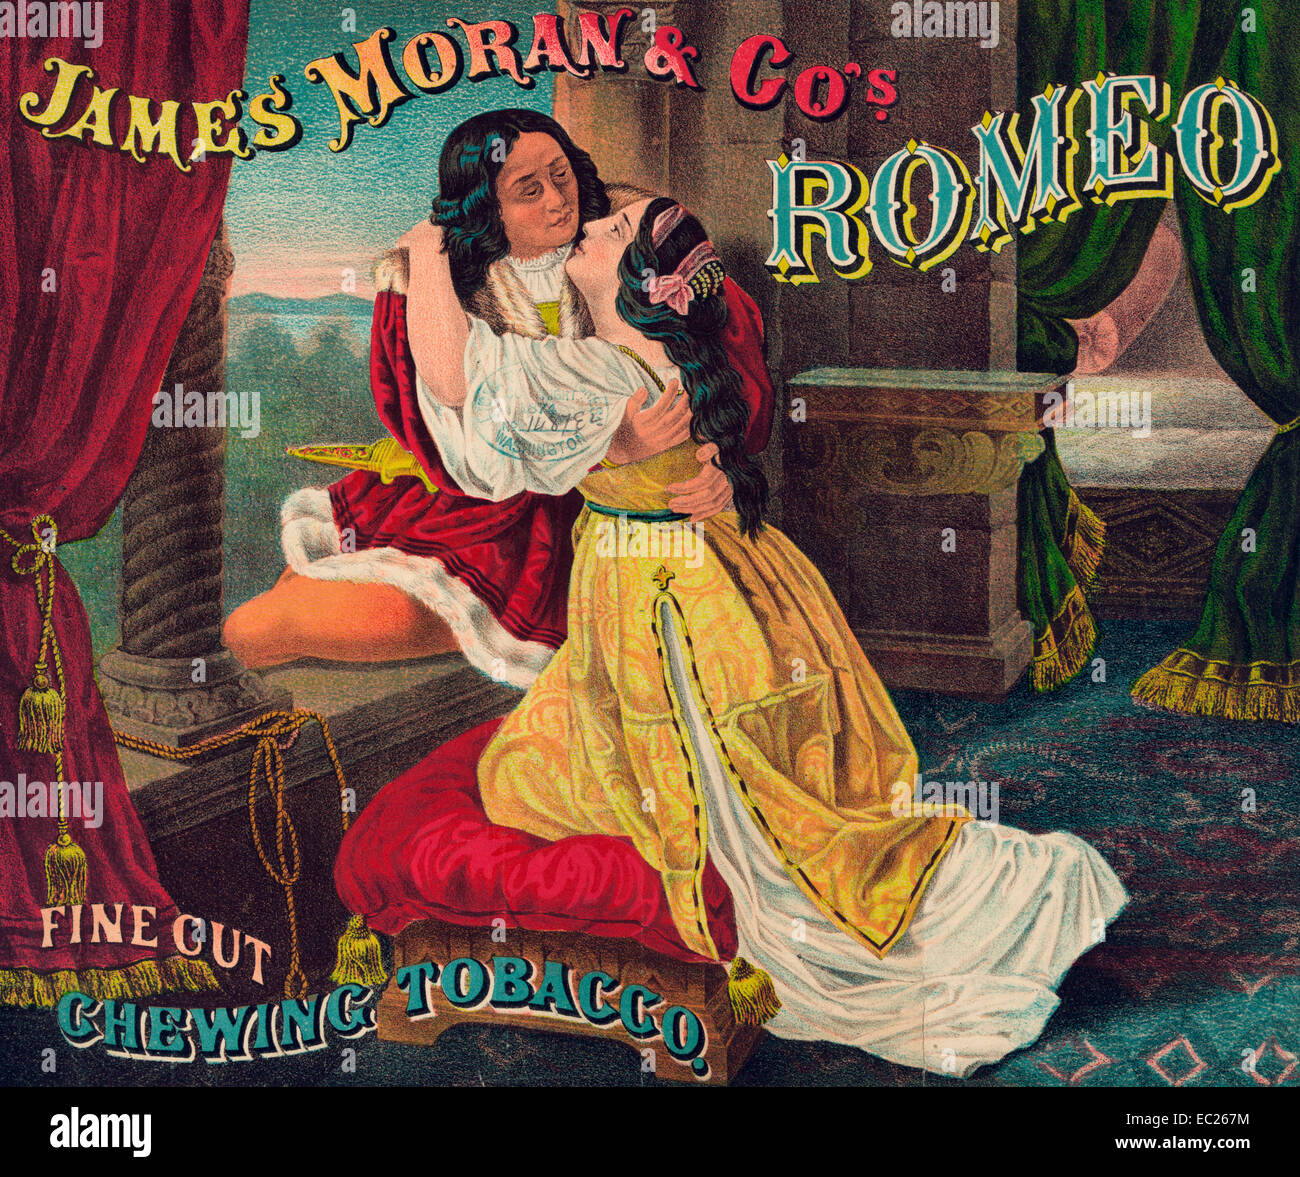 James Moran & Co.'s Romeo, le tabac à coupe fine, - Résumé : L'étiquette de l'emballage du tabac montrant Roméo et Juliette enlacés, par une fenêtre ouverte, qu'ils sont en congé de l'autre, 1874 Banque D'Images